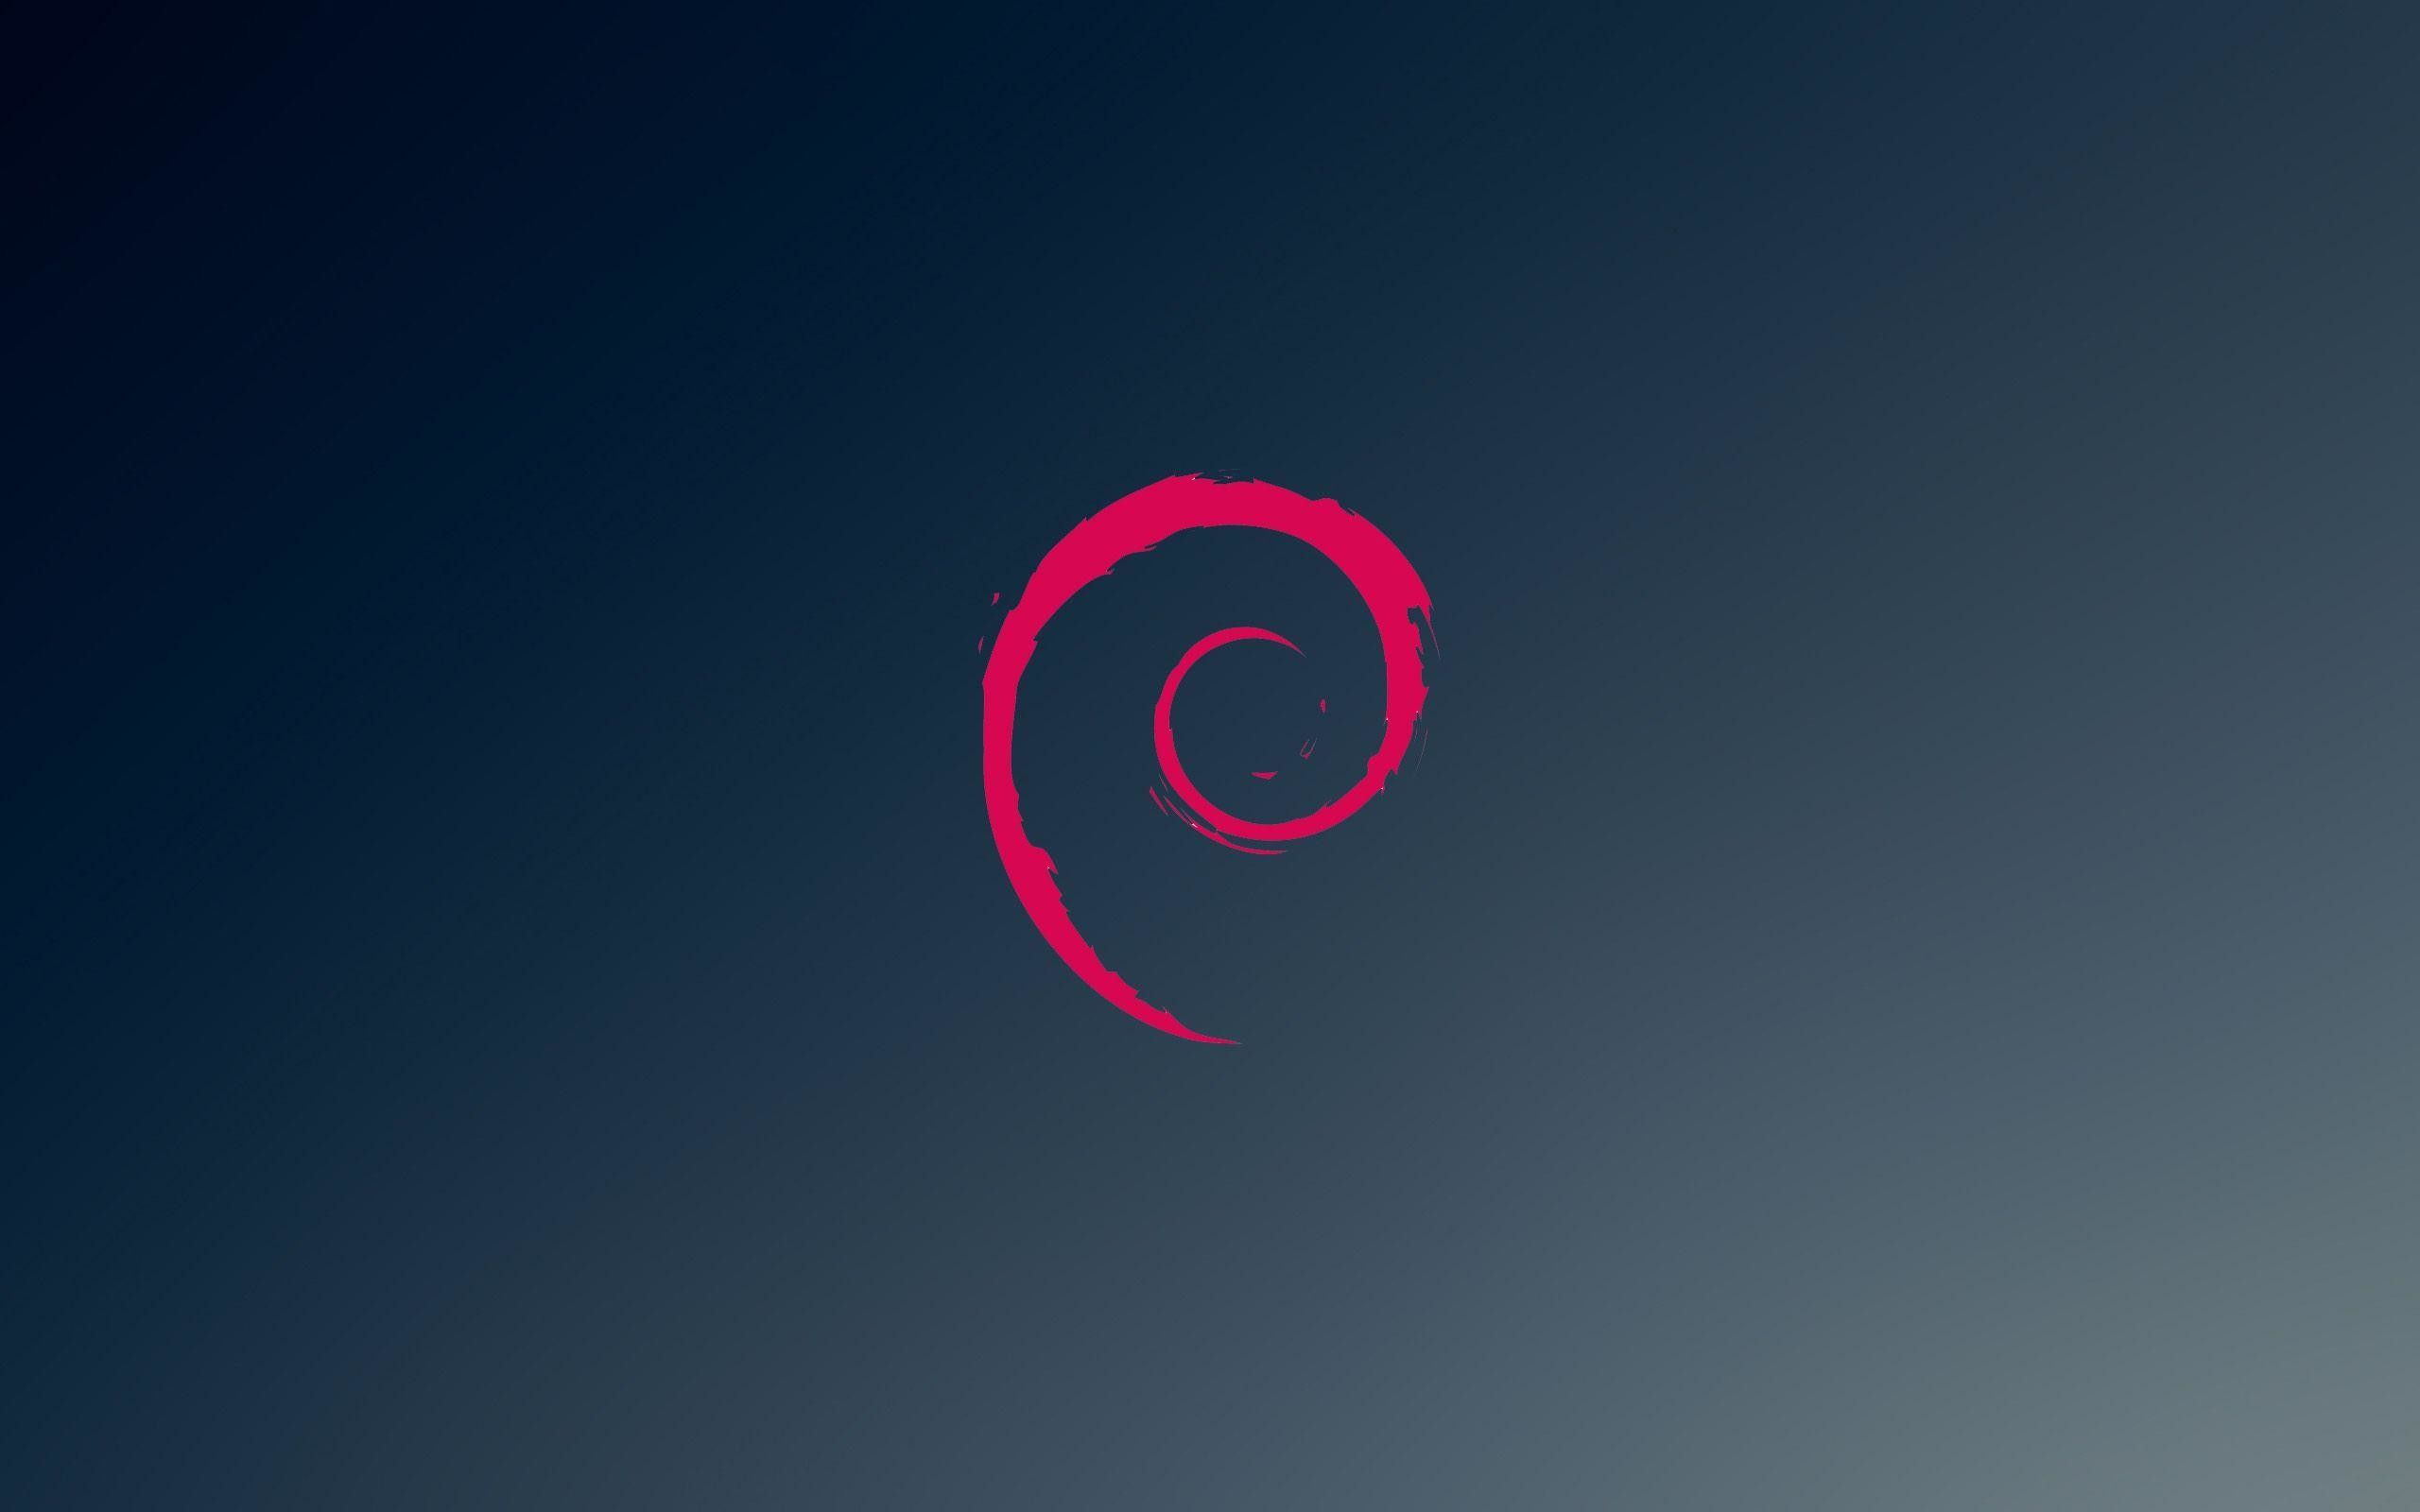 Debian Linux Wallpaper Free Debian Linux Background